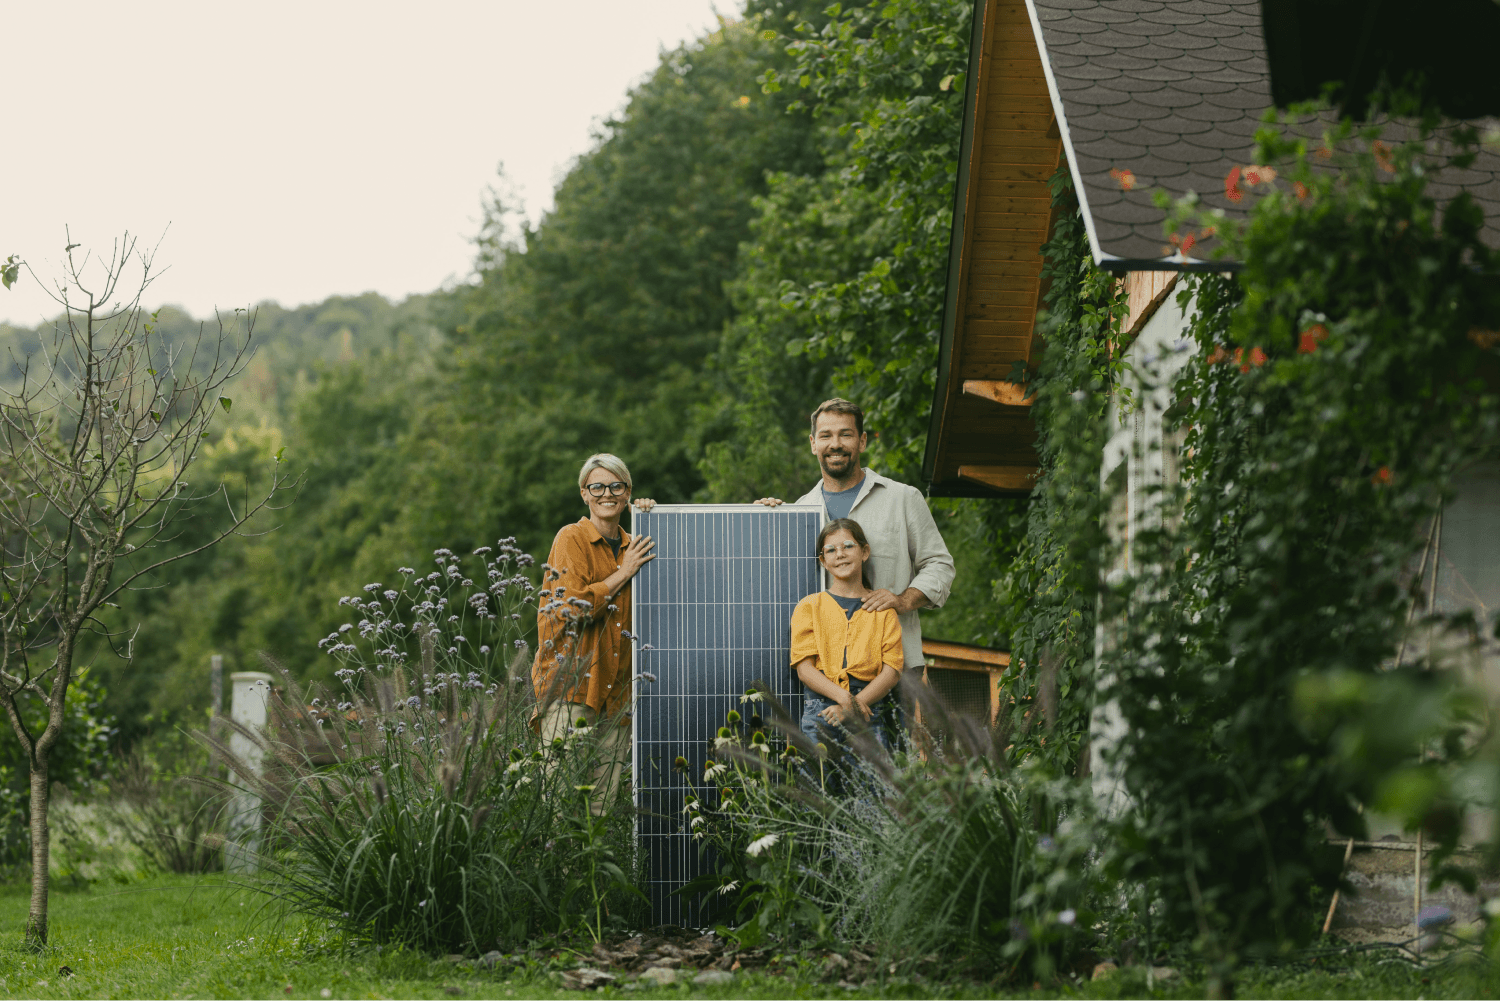 Mutter und Vater im Garten mit Solarpanel und Kind